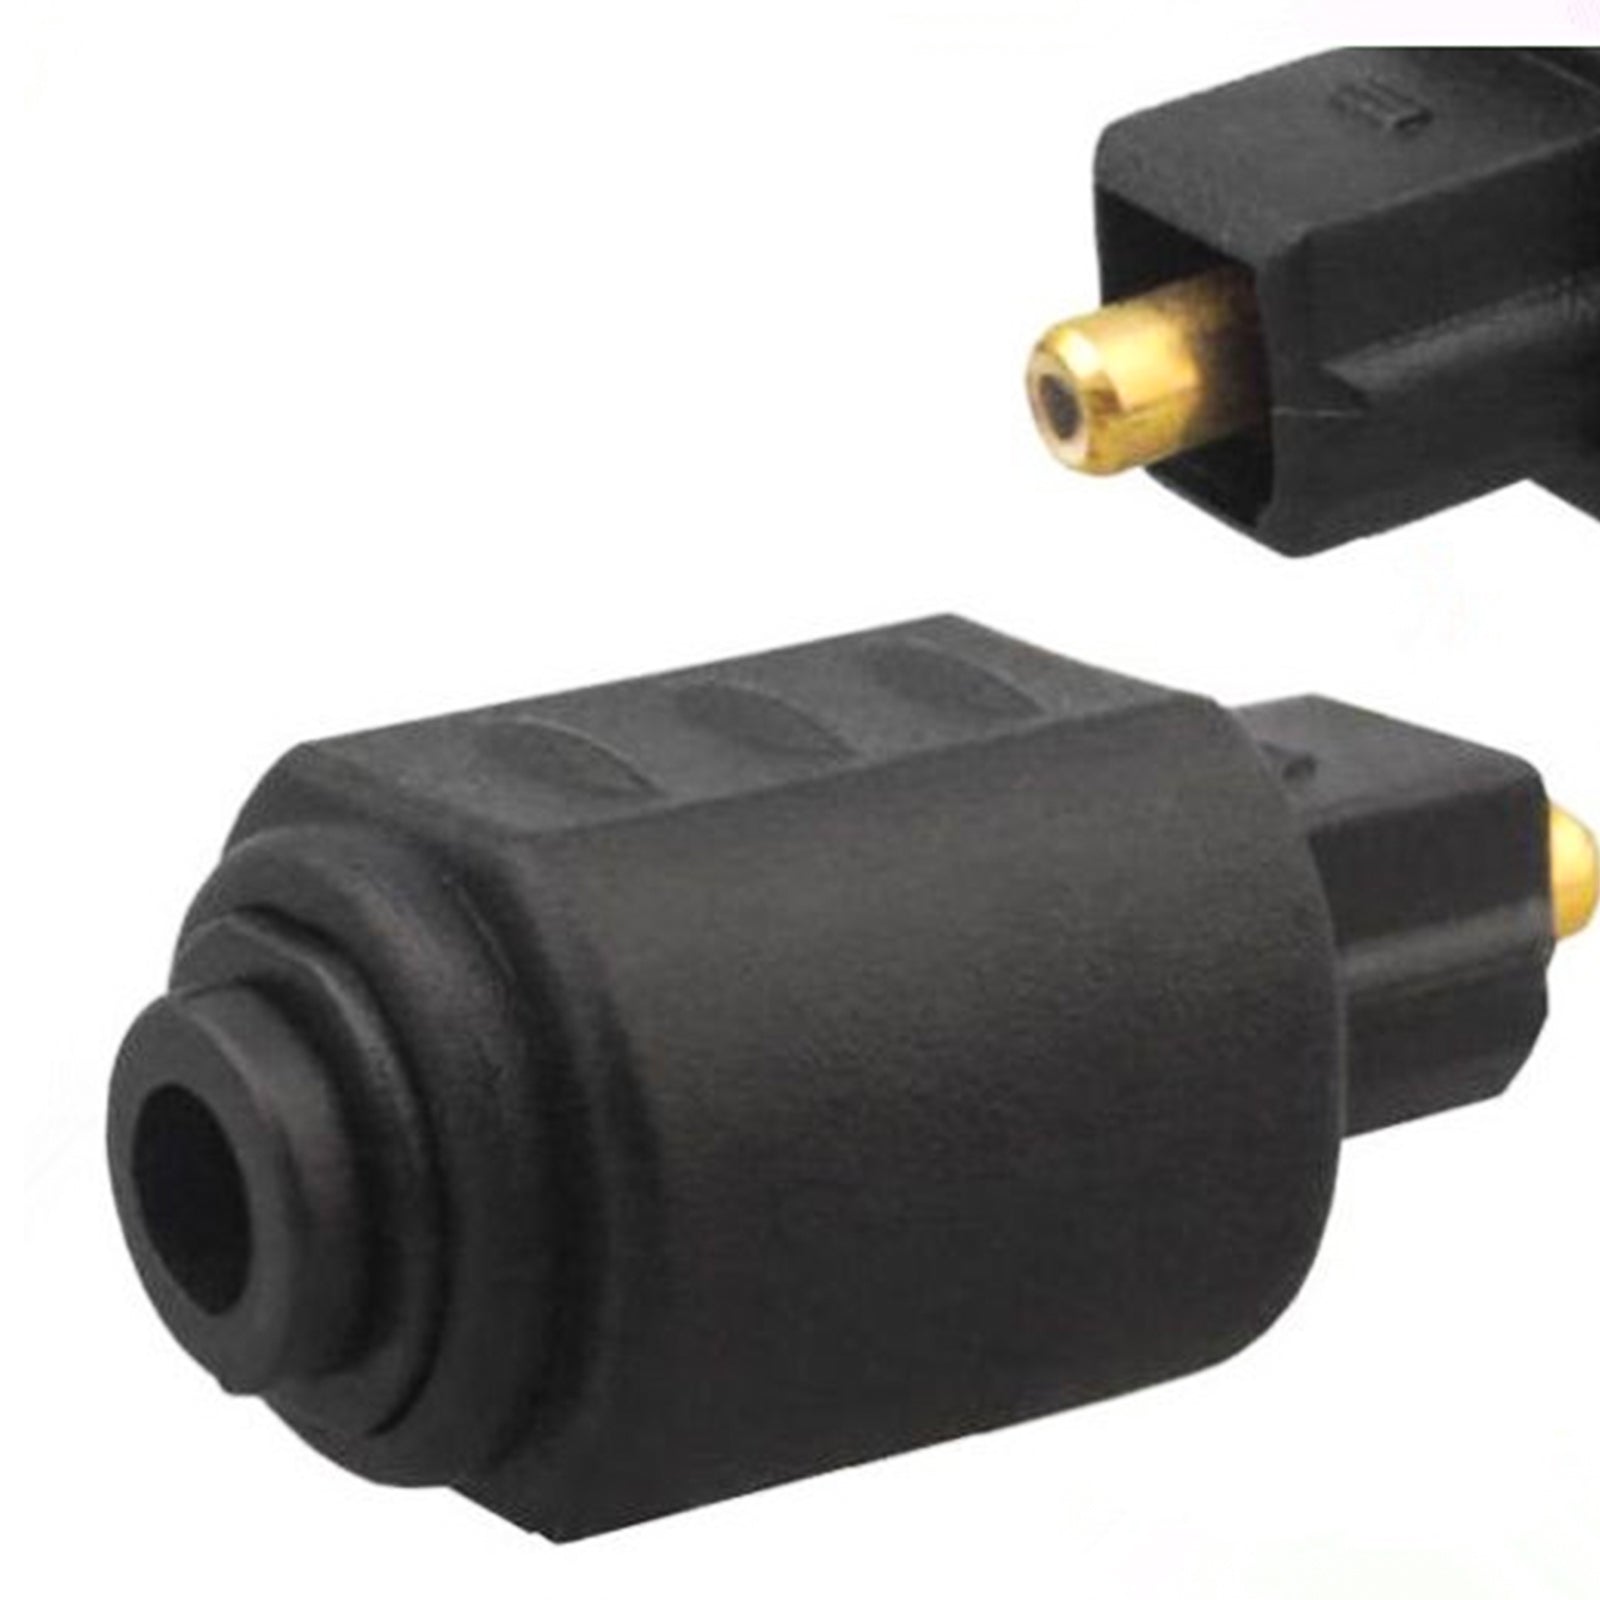 TD® Adaptateur optique jack vers Toslink femelle male câble TV mini toslink double extrémité entrée sortie couleur noir plug 3,5mm